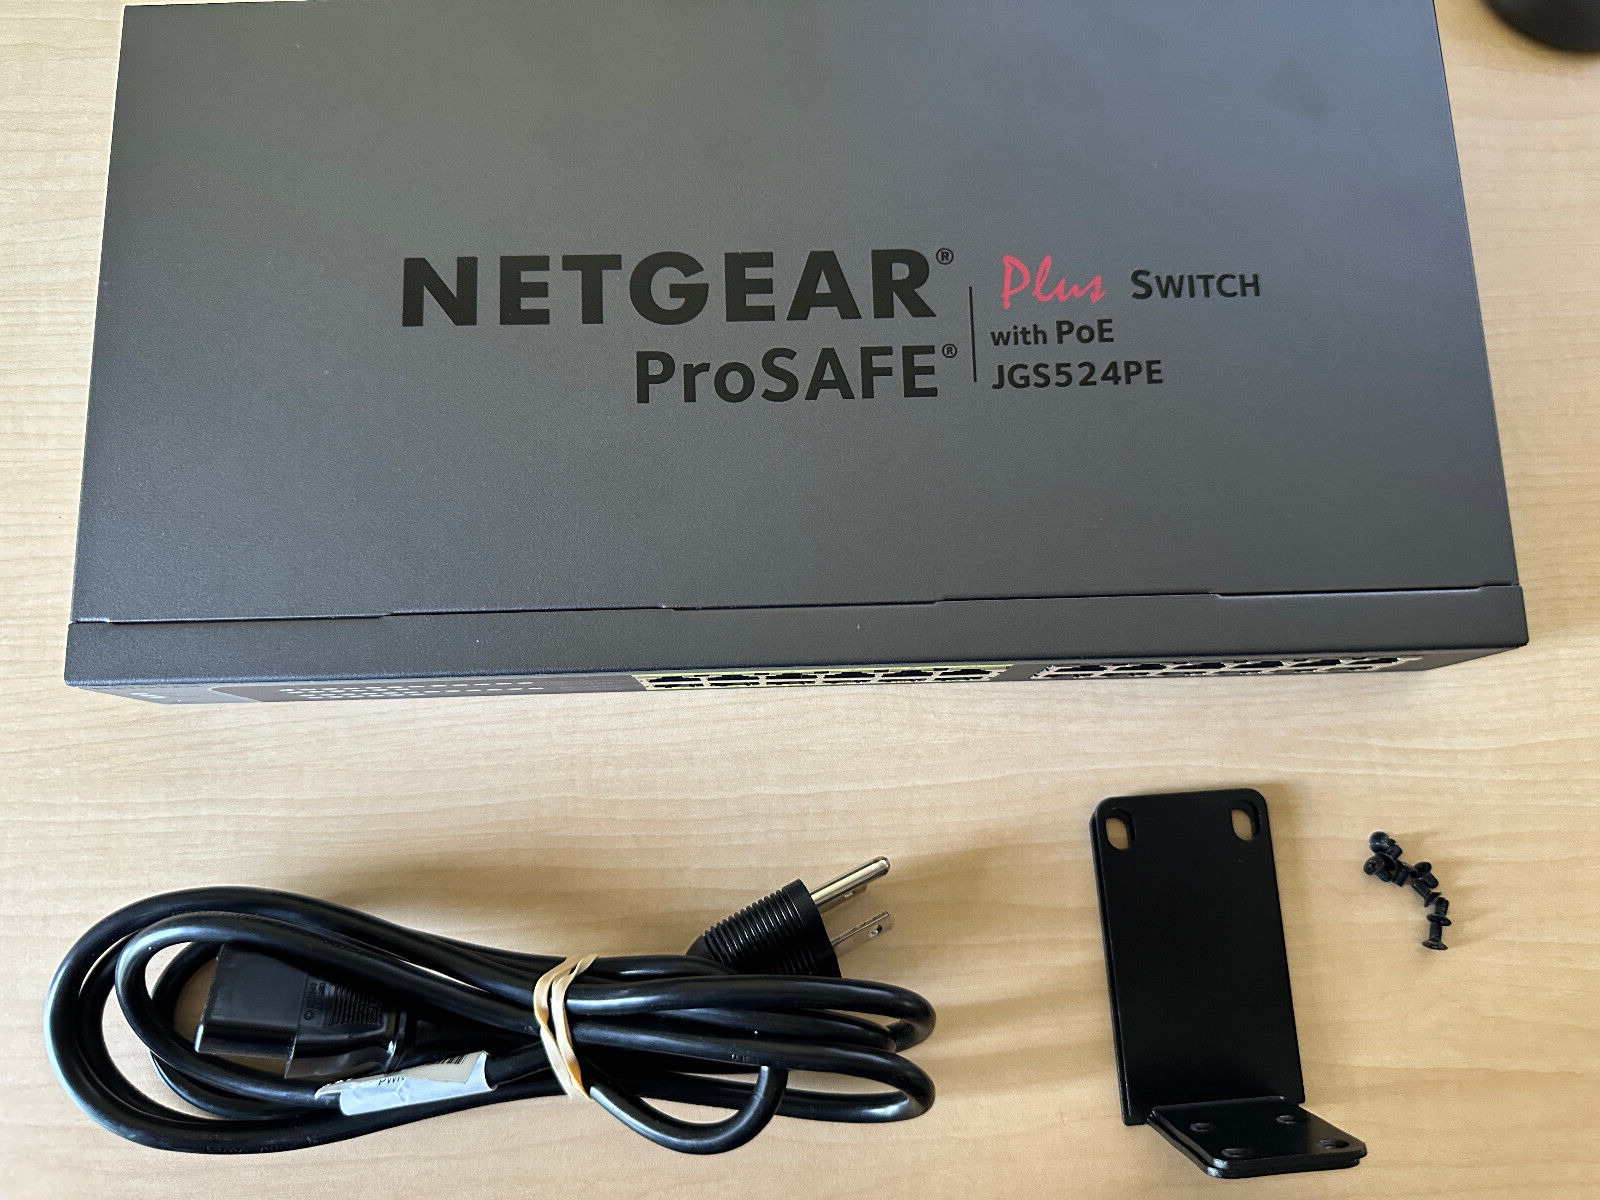 NetGear ProSafe JGS524PE 24 Port Gigabit PoE Network Switch TESTED W/ Rack Ears